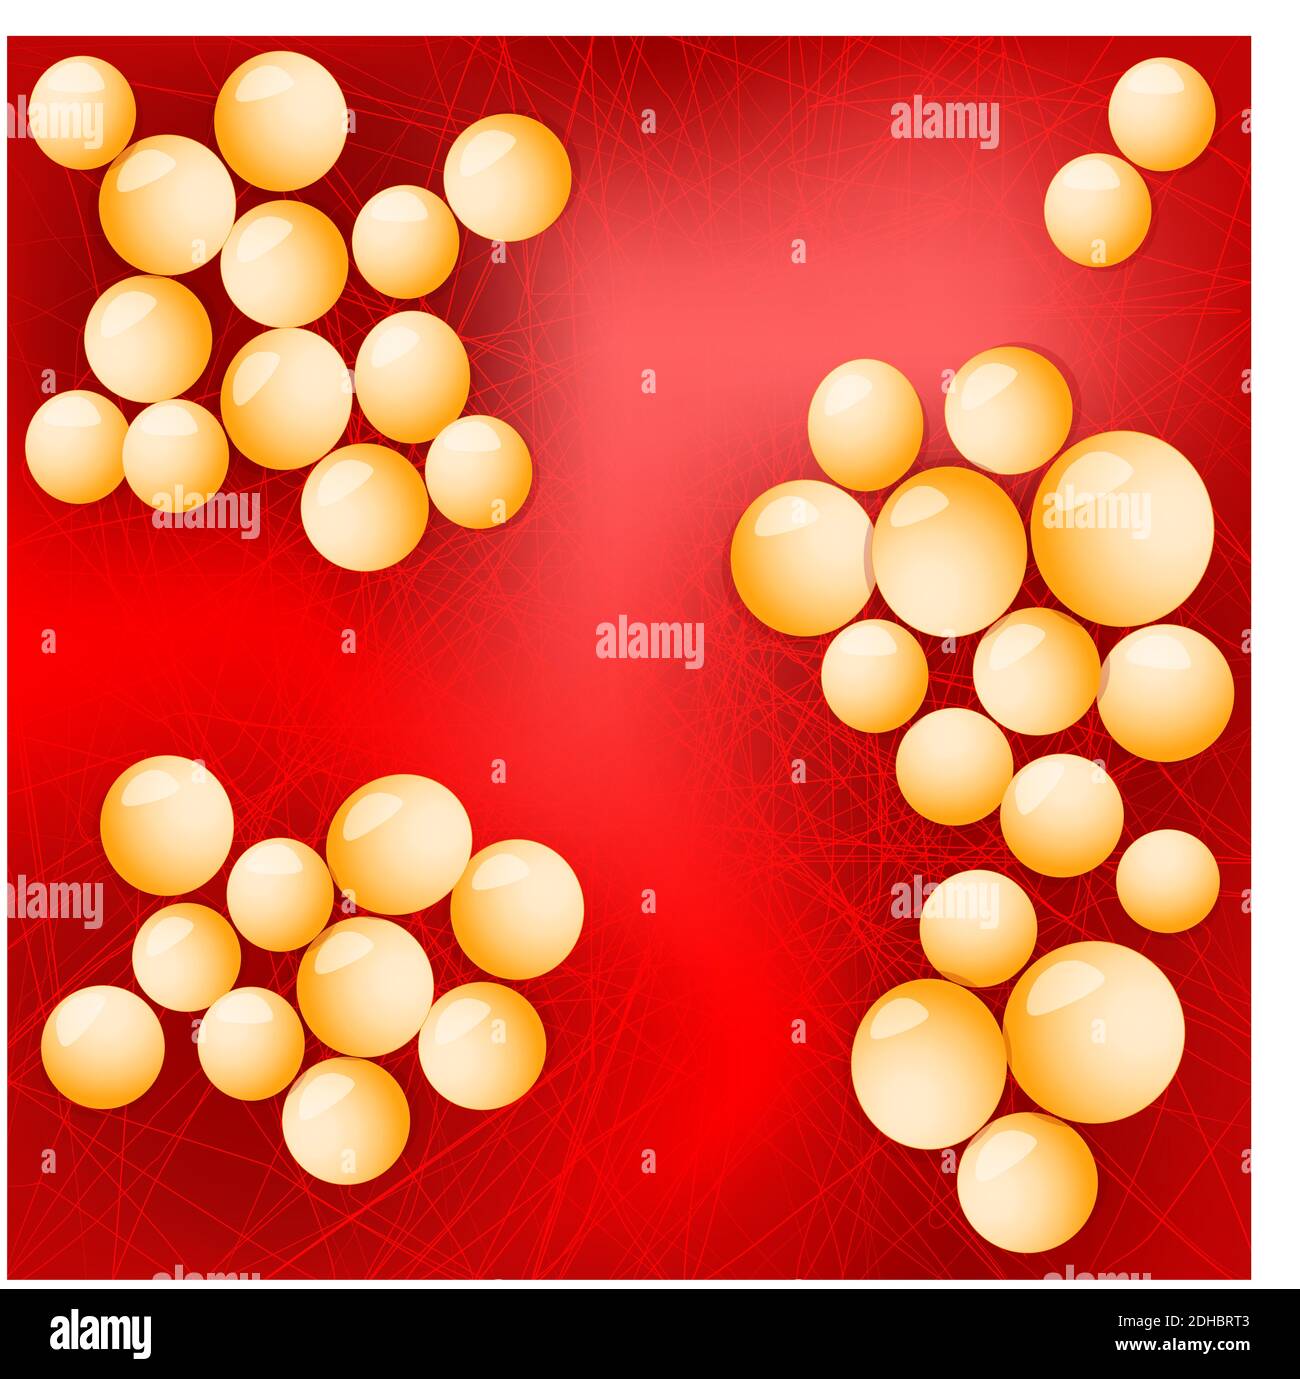 Staphylococcus aureus sur fond rouge. Illustration vectorielle pour votre conception, votre éducation, votre biologie, votre usage scientifique et médical. Illustration de Vecteur